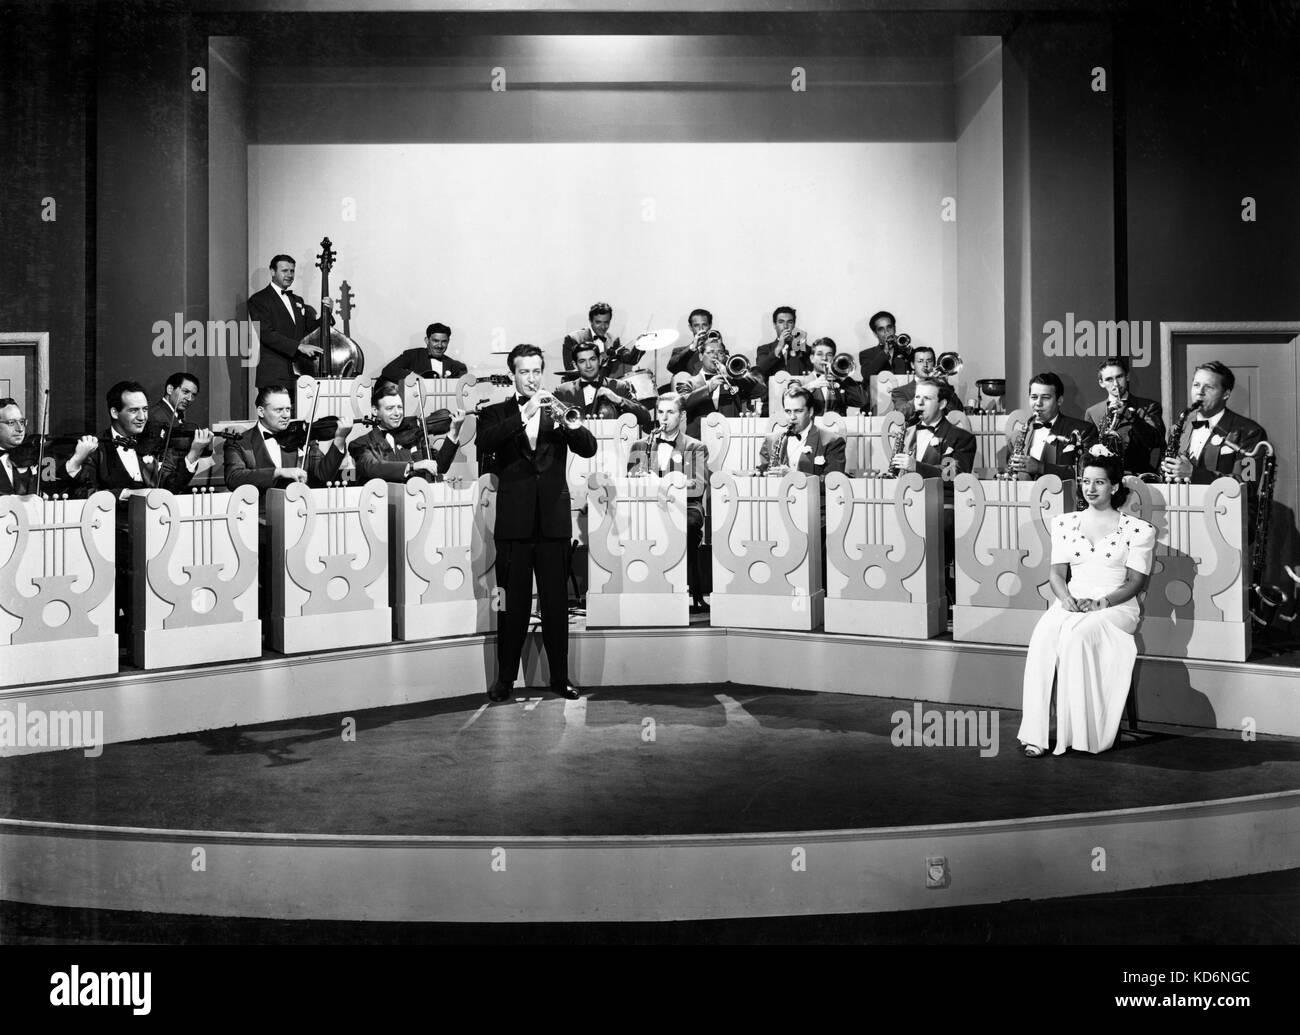 Harry James - auf der Bühne - Amerikanische turmpet Player - mit seiner Band The Music Makers - 1939 gegründet - 15. März 1916 - 5. Juli 1983 Stockfoto